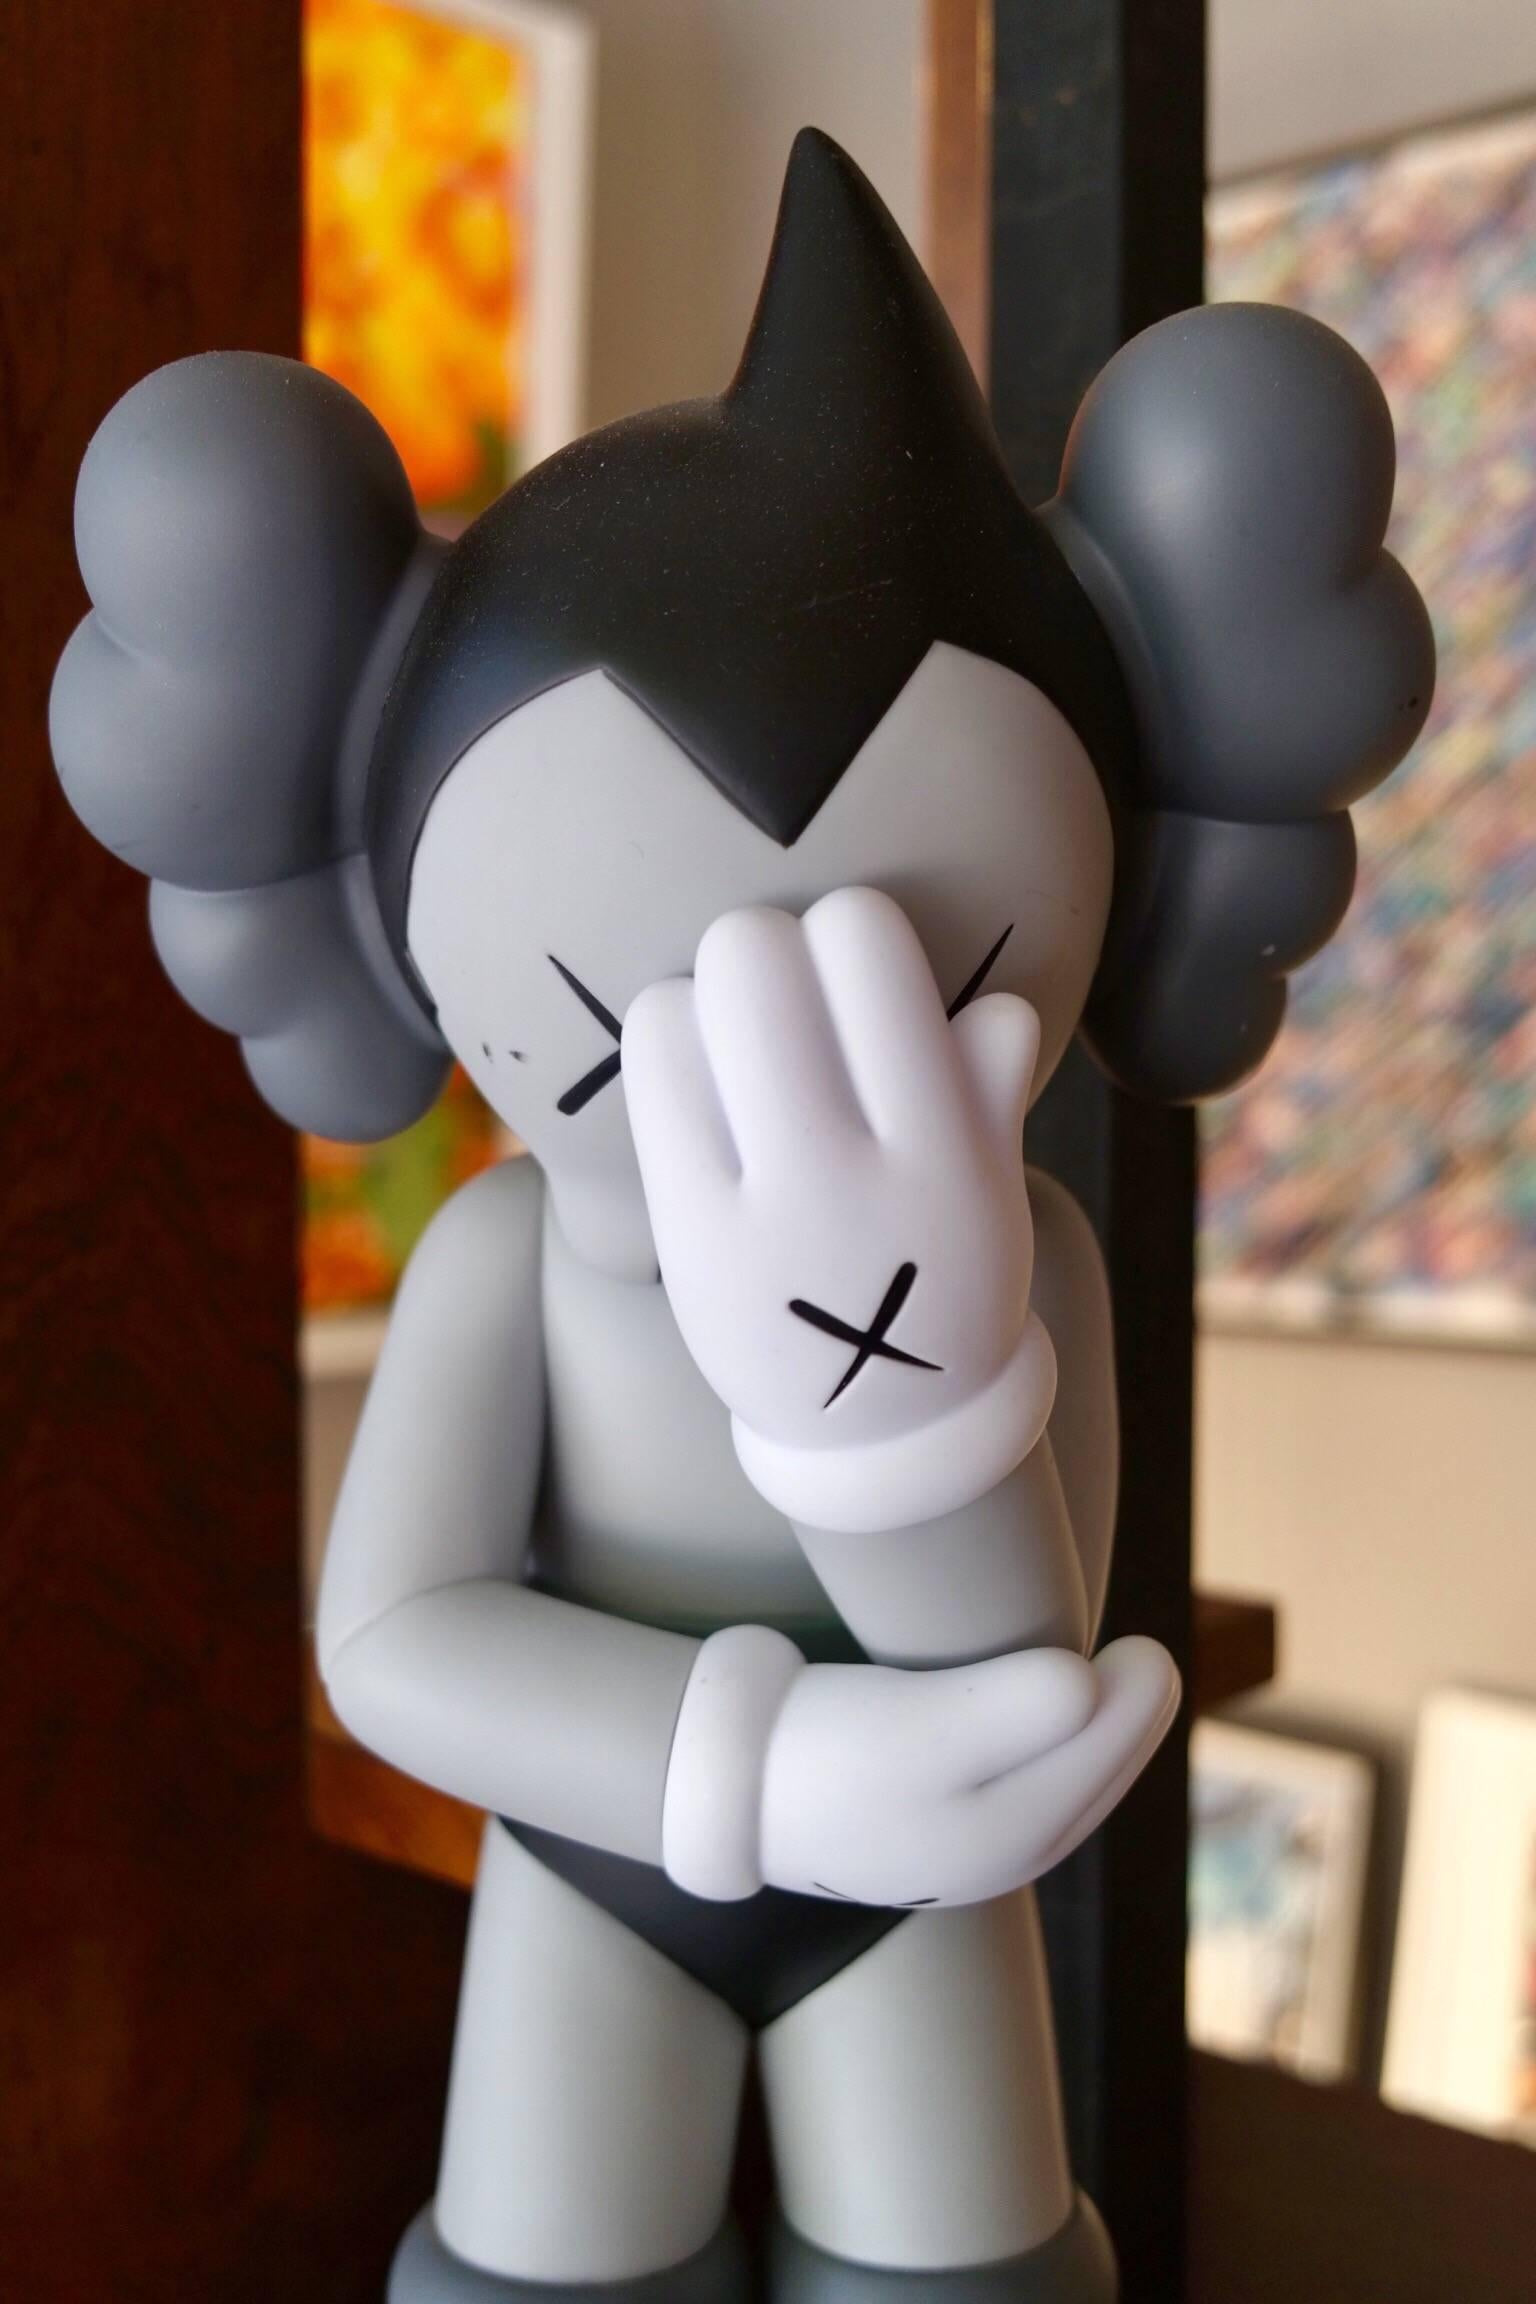 Painted Kaws, Astro Boy Companion Tezuka Production Medicom Toy Corporation 2012, Grey